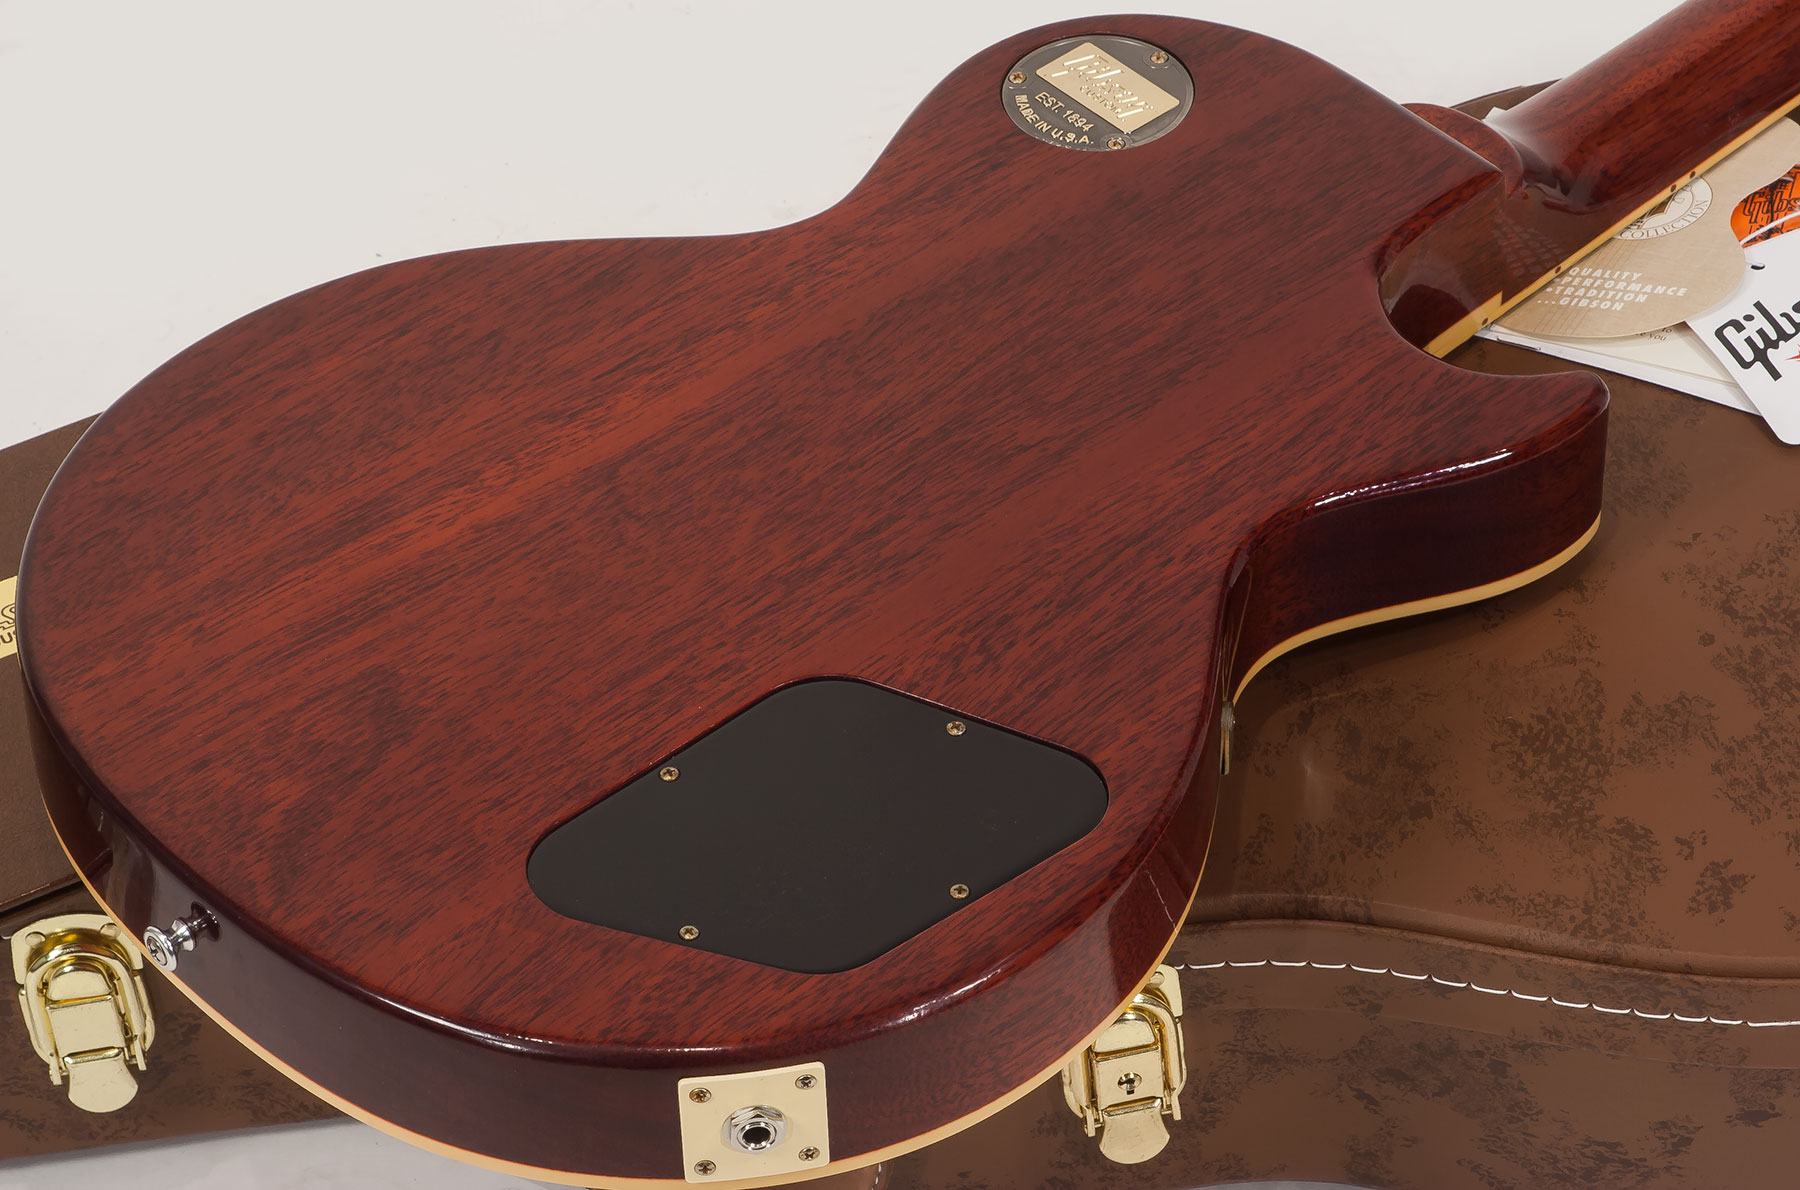 Gibson Custom Shop M2m Les Paul Standard 1959 Lh Gaucher Ltd 2h Ht Rw #971610 - Vos Washed Cherry - Linkshandige elektrische gitaar - Variation 5